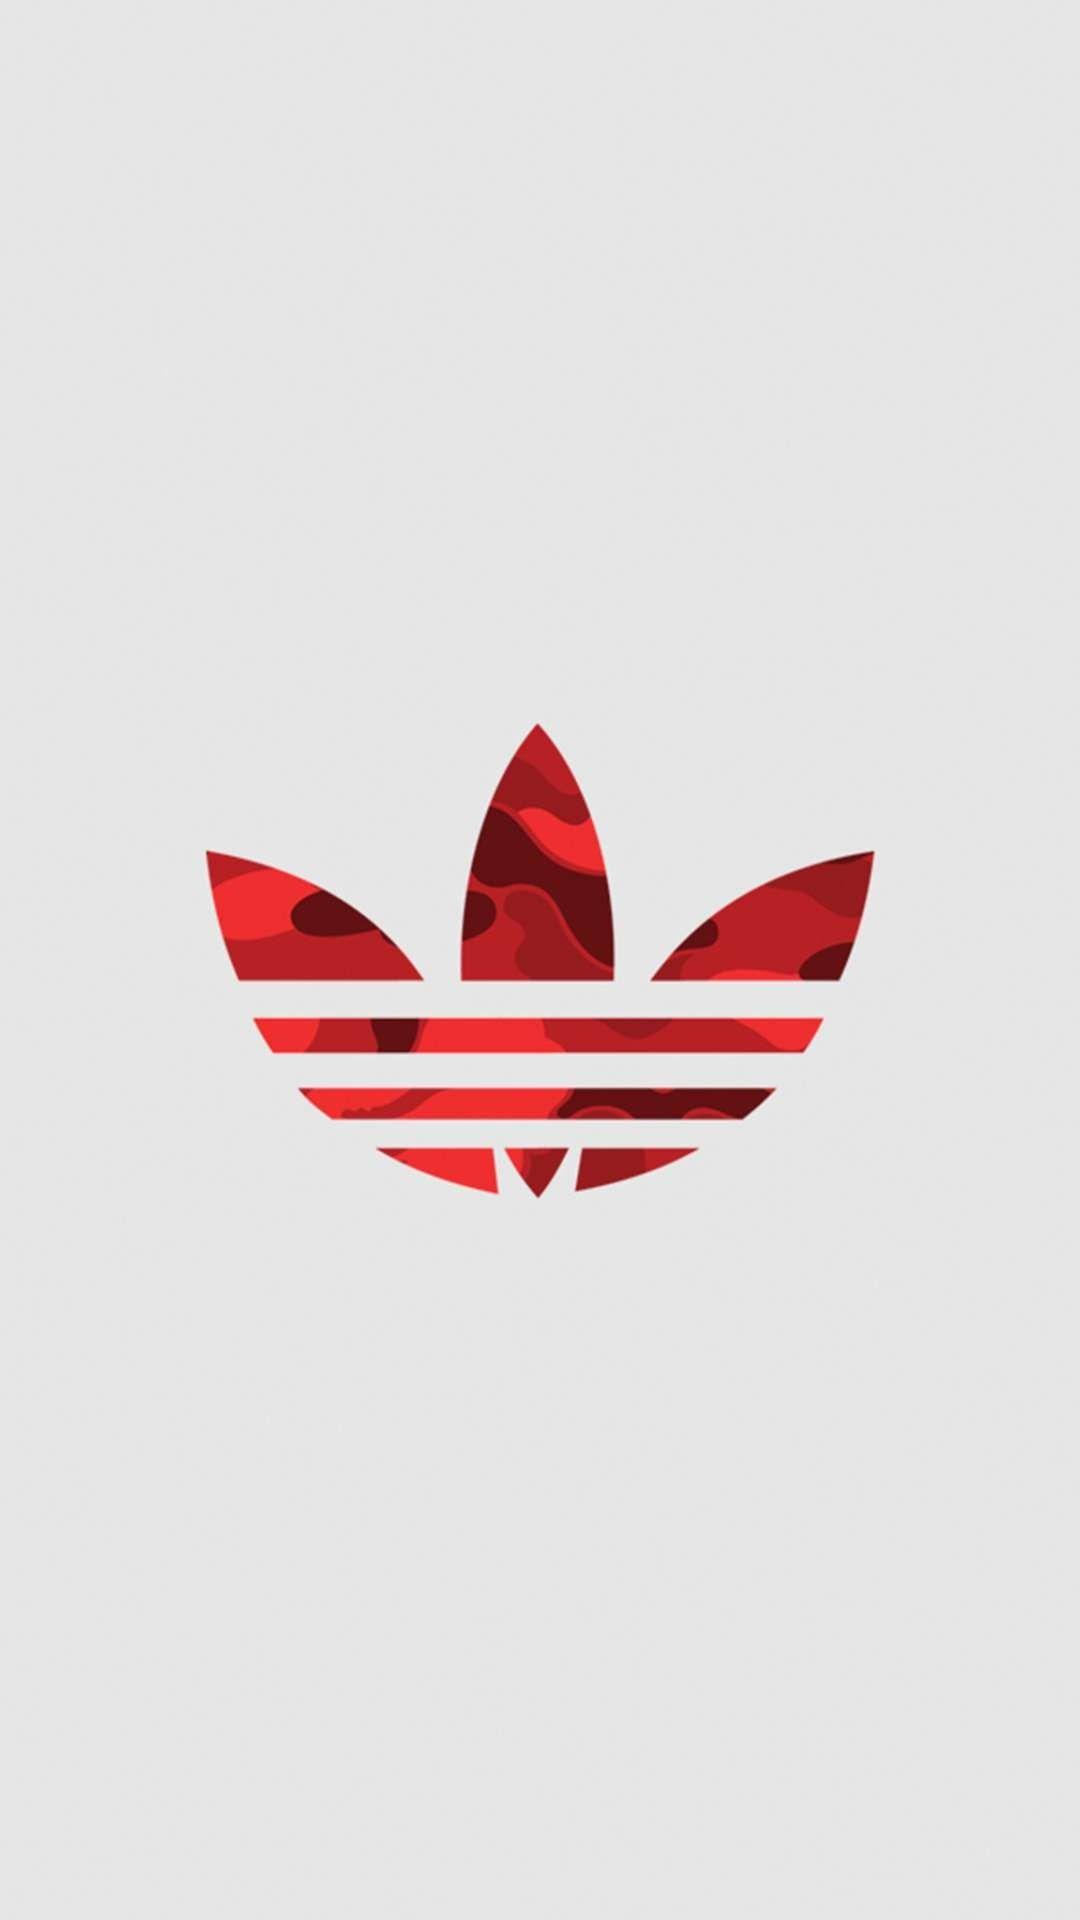 Supreme Adidas Logo - Nike & Adidas. Wallpaper, iPhone